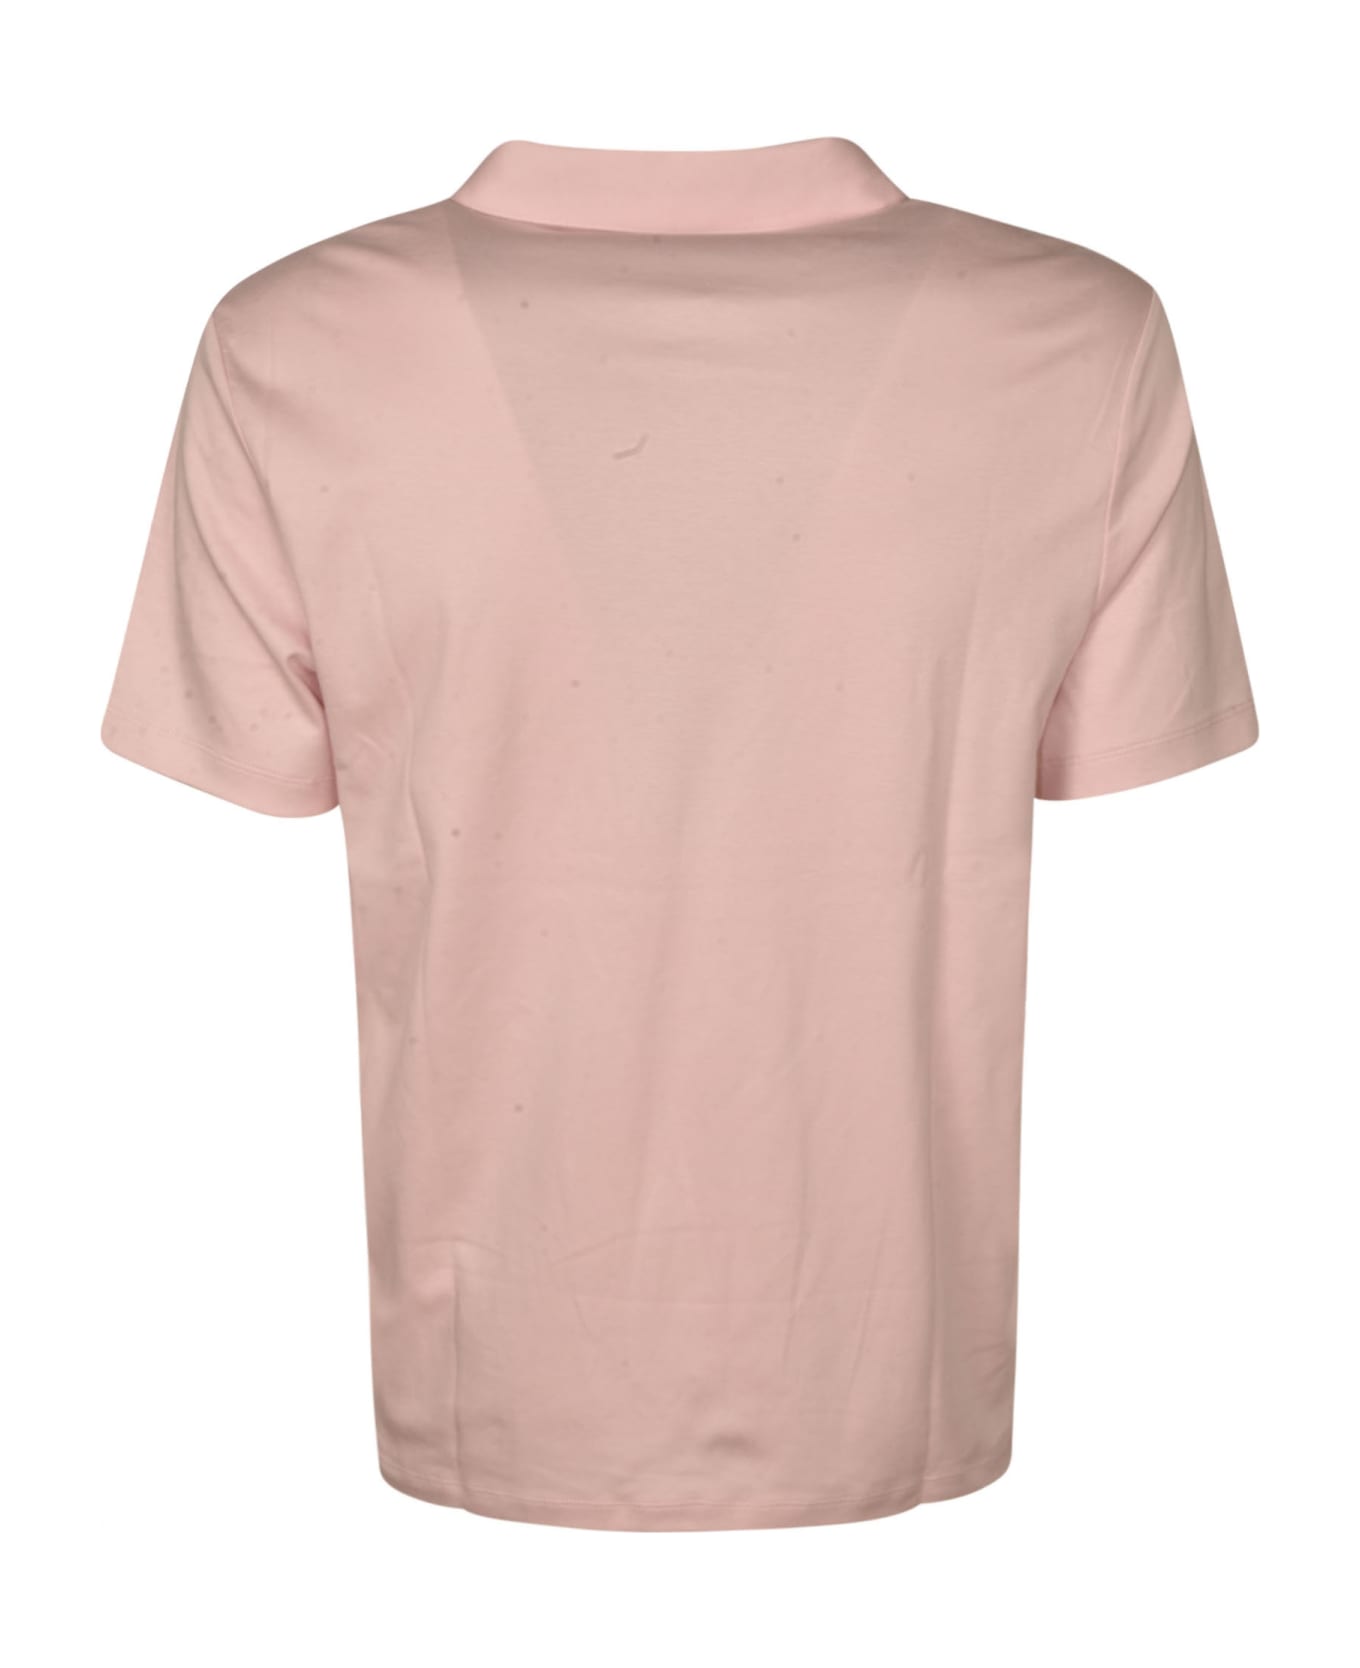 Michael Kors Logo Embroidered Polo Shirt - Pink